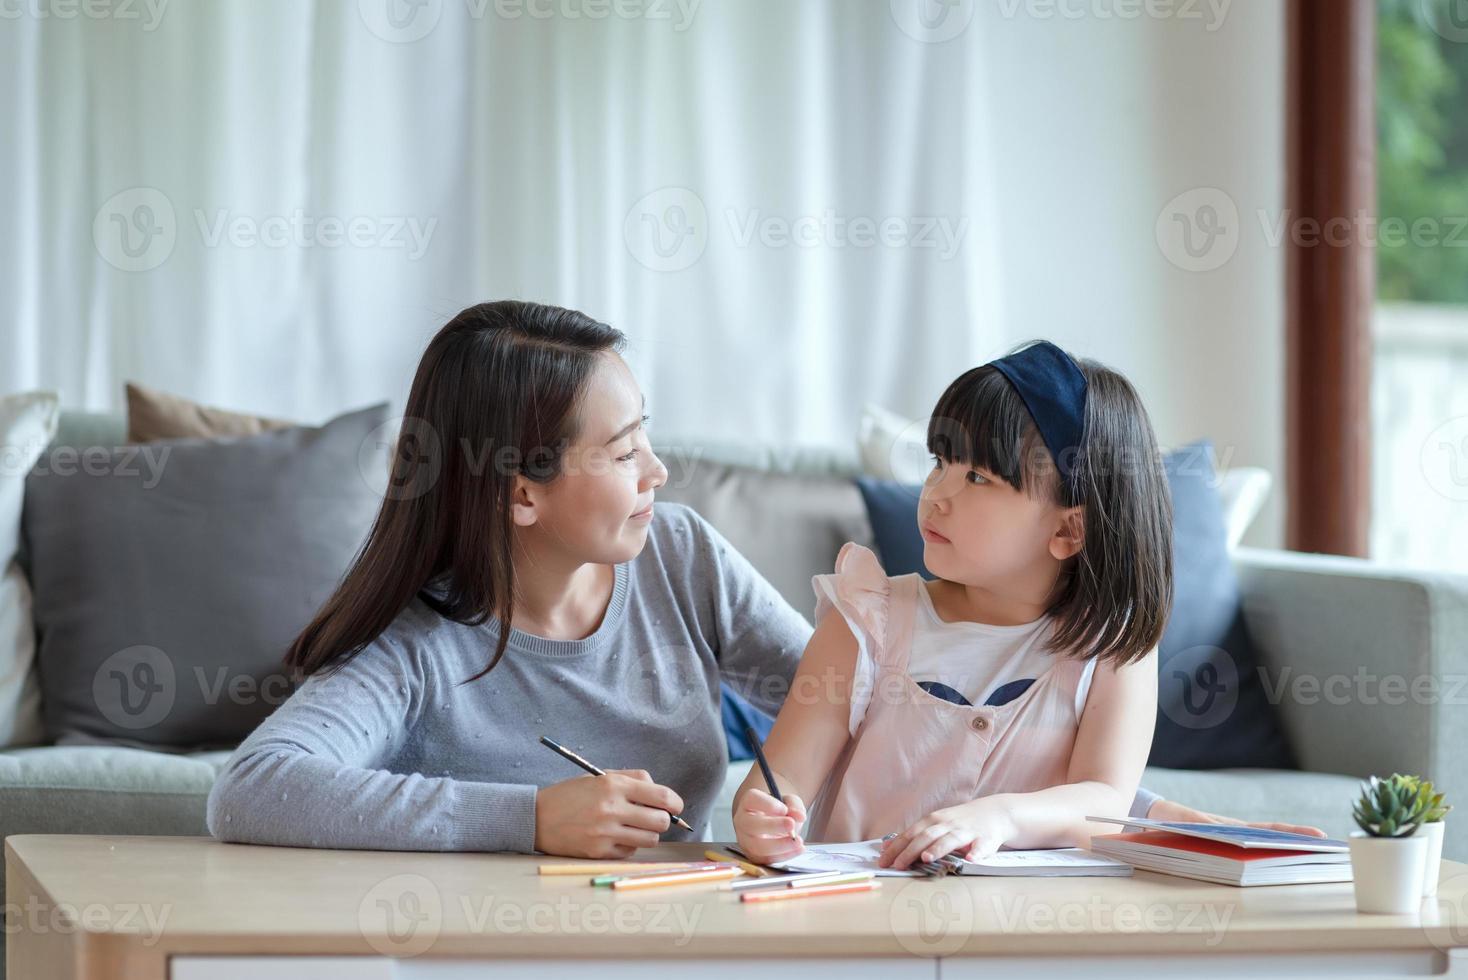 Aziatische moeder leert haar schattige dochtertje om thuis in de woonkamer te studeren foto